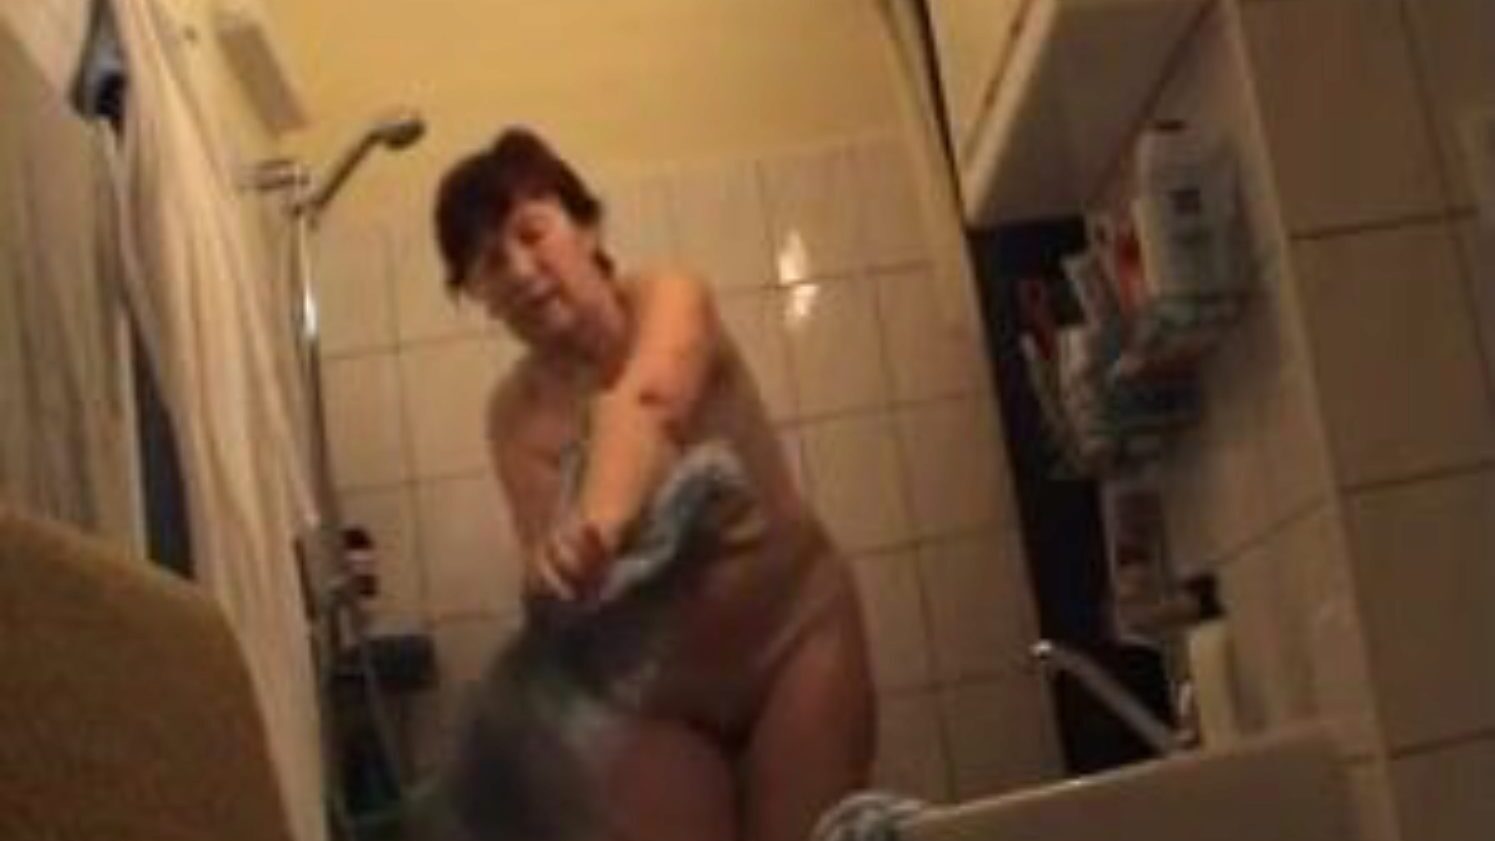 tysk bestemor naken på badet, gratis tyskere porno videoannonse se tysk bestemor naken på badet filmscene på xhamster, det største sexrørsiden med tonnevis av gratis tyskere naken bestemor og modne porno vids